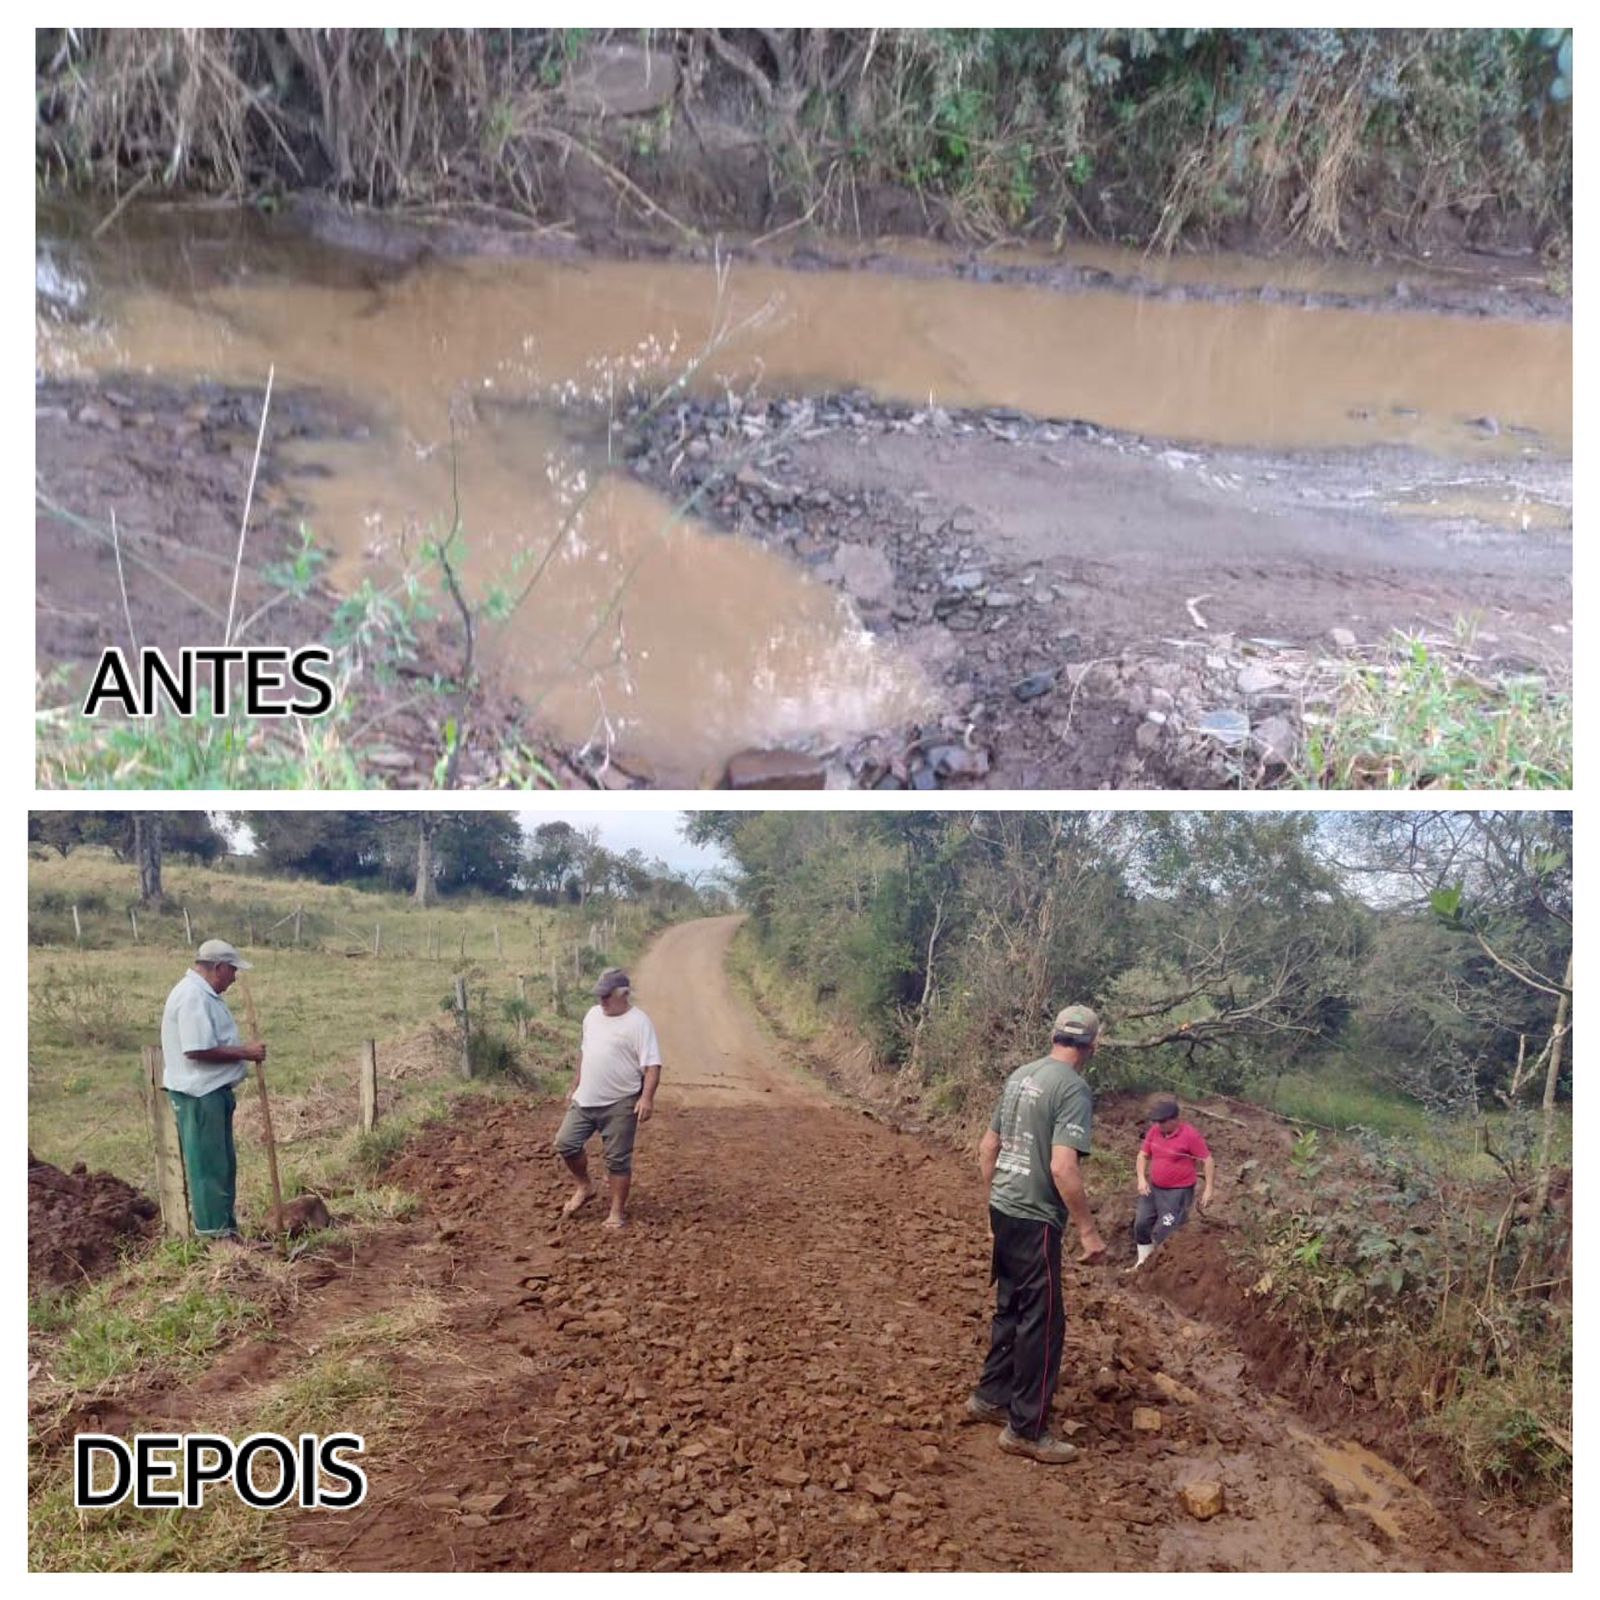 Obras dão fim a um problema de décadas nas comunidades de Imbiruçu e Macegão